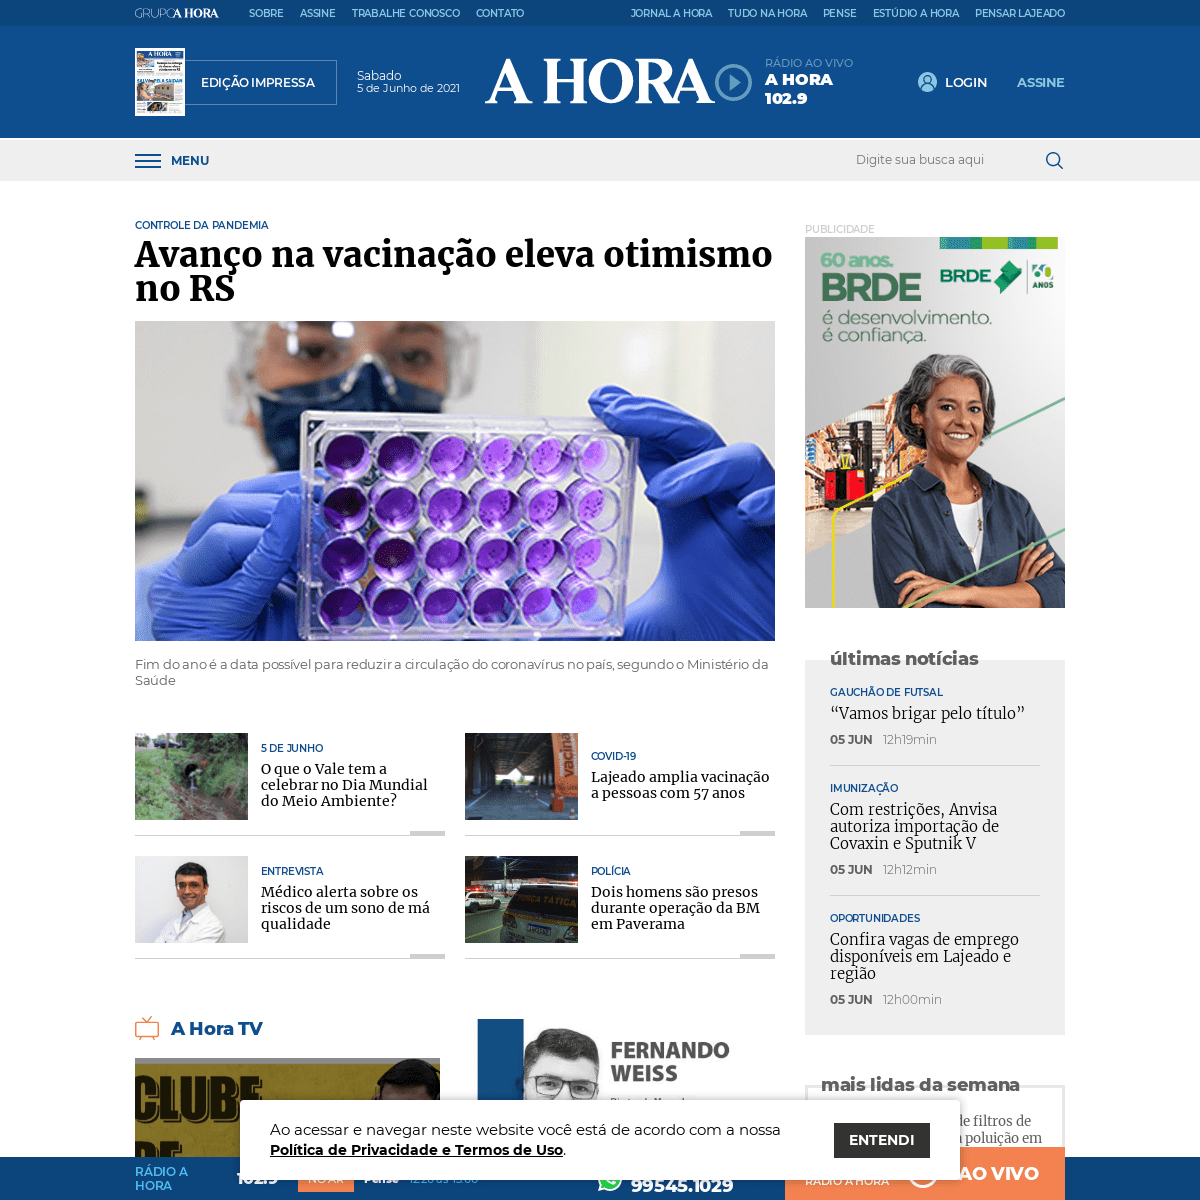 A complete backup of https://jornalahora.com.br